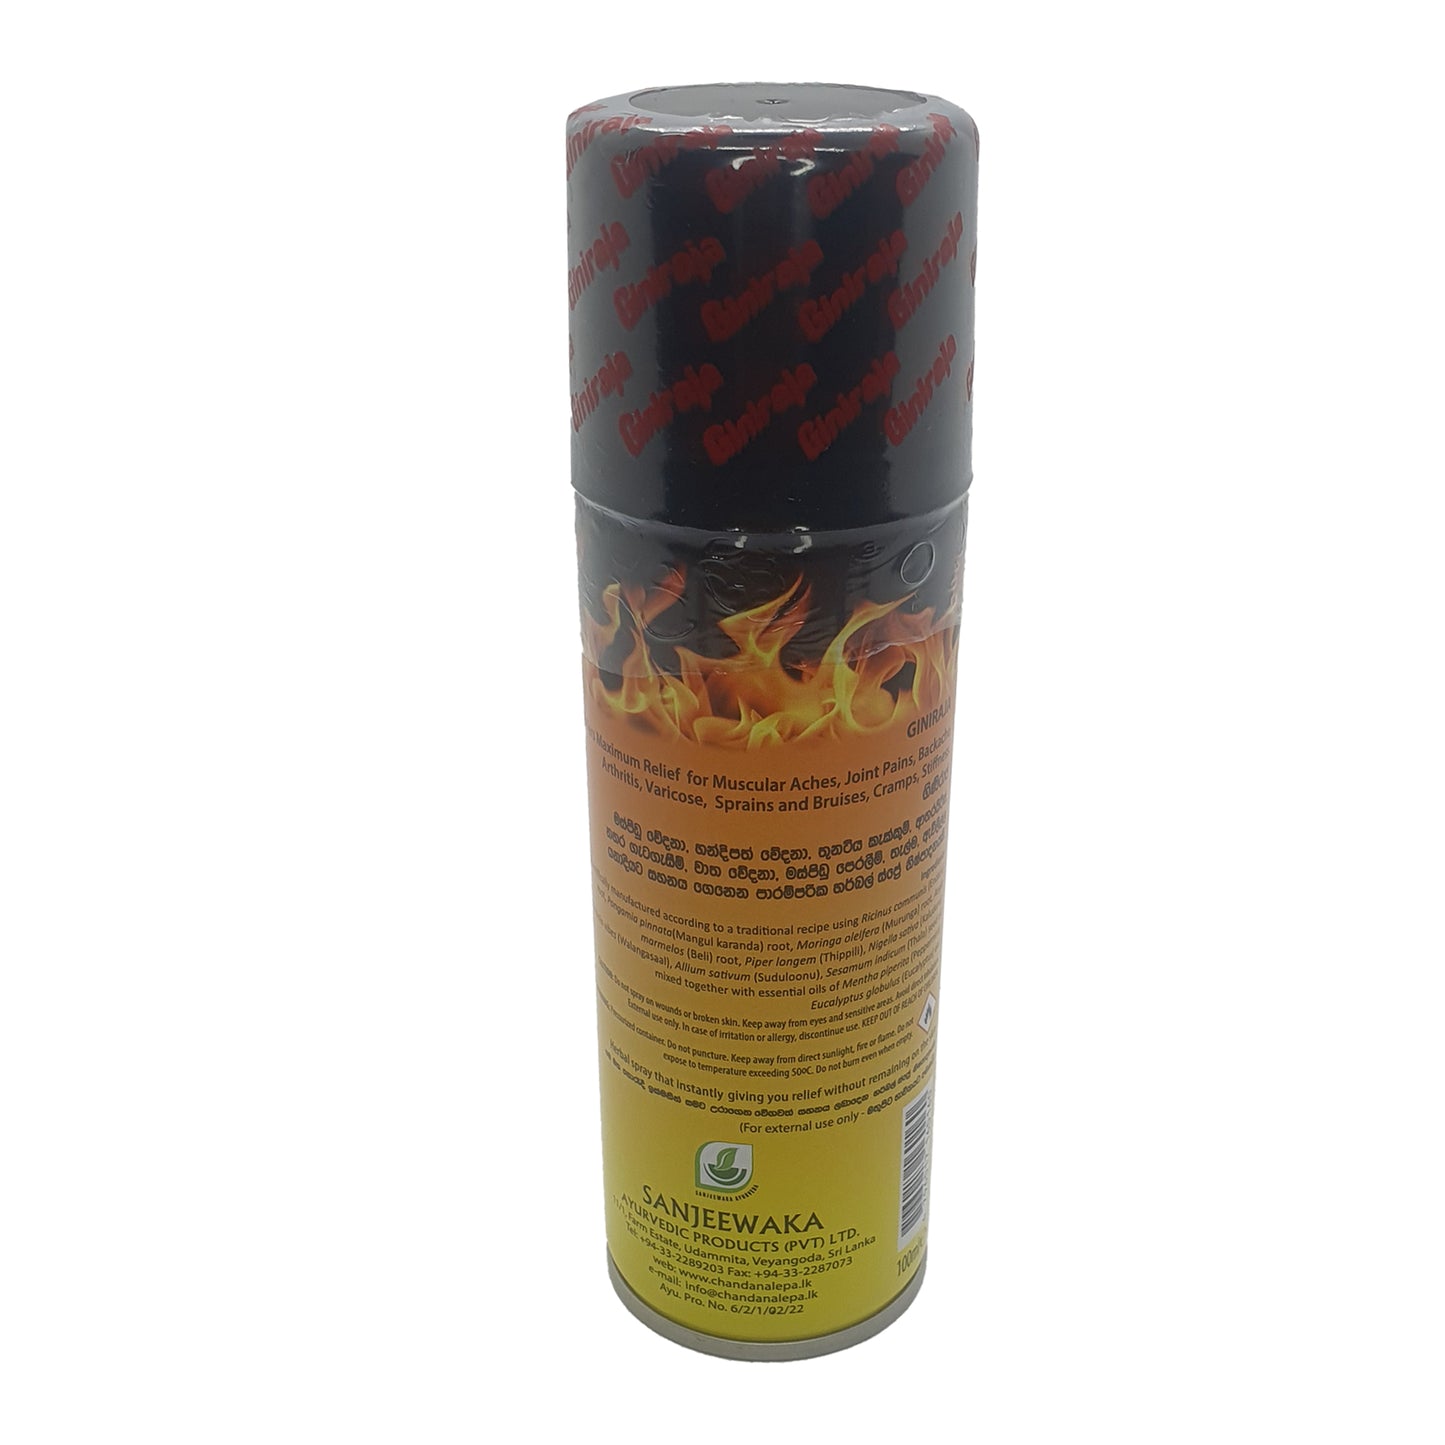 Chandanalepa Giniraja Pain Relieving Herbal Spray (100ml)